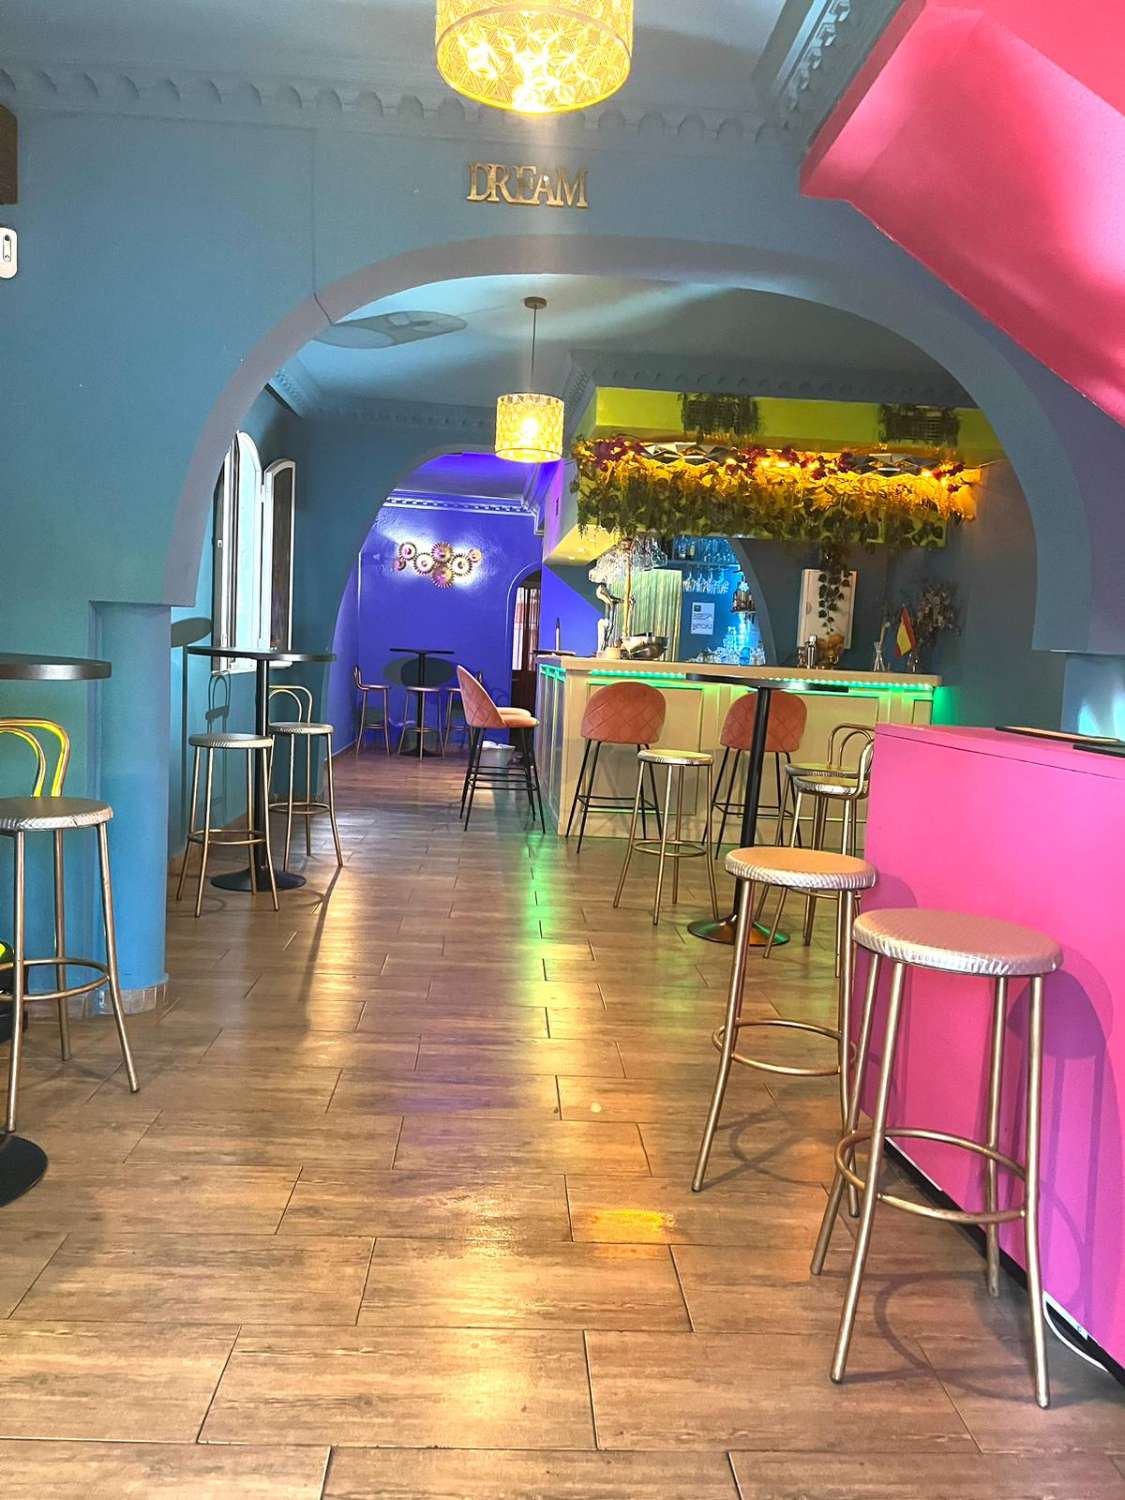 Music lounge bar en Torremolinos, Málaga en la Costa del Sol en España. CON VIVIENDA